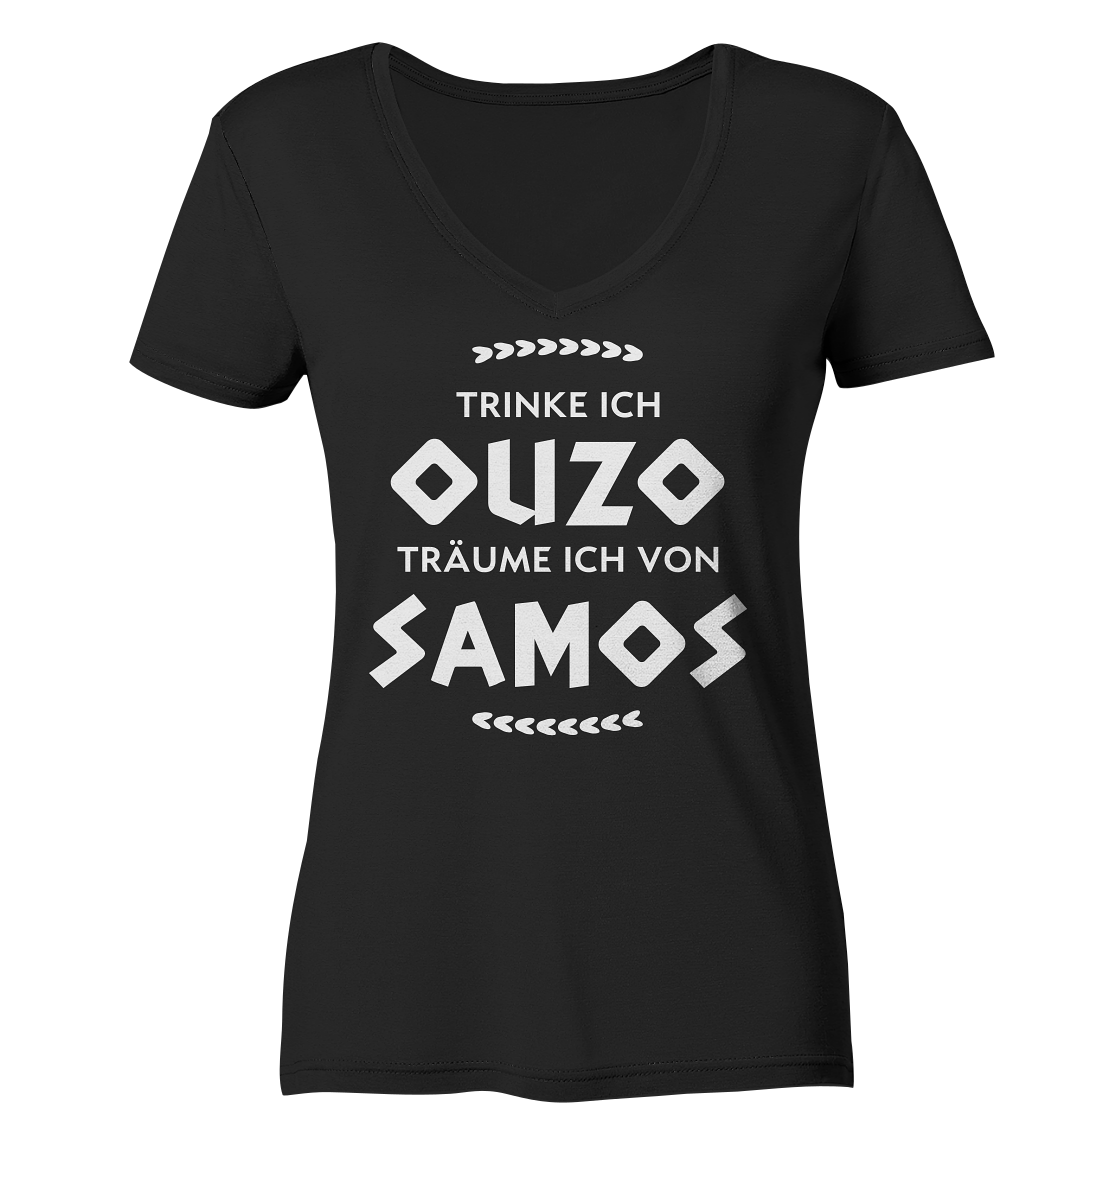 Trinke ich Ouzo träume ich von Samos - Ladies Organic V-Neck Shirt